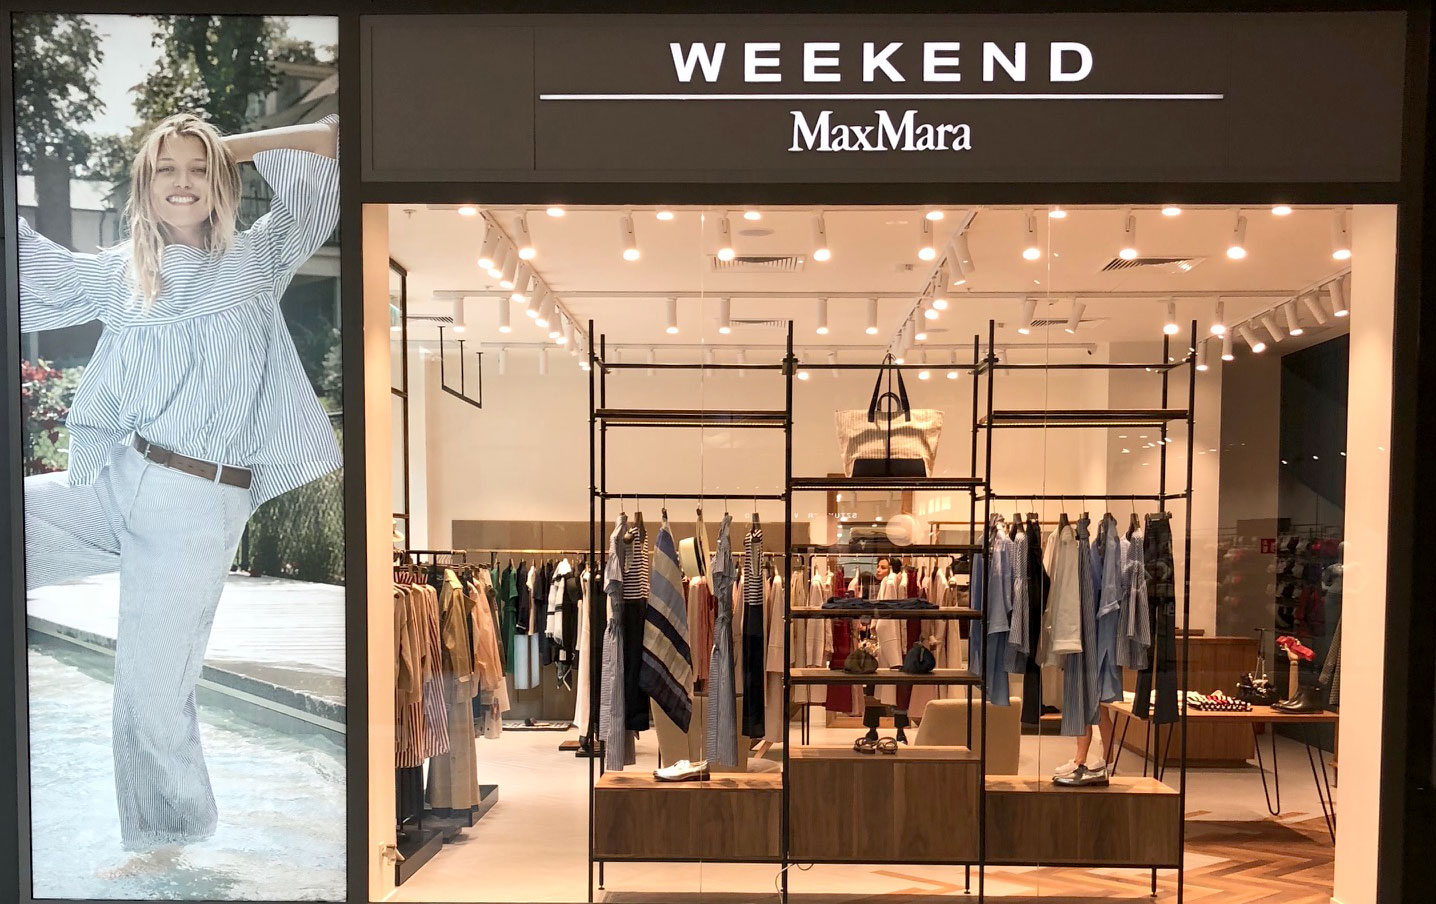 Weekend Max Mara - Franchising.pl - franczyza, pomysł na własny biznes